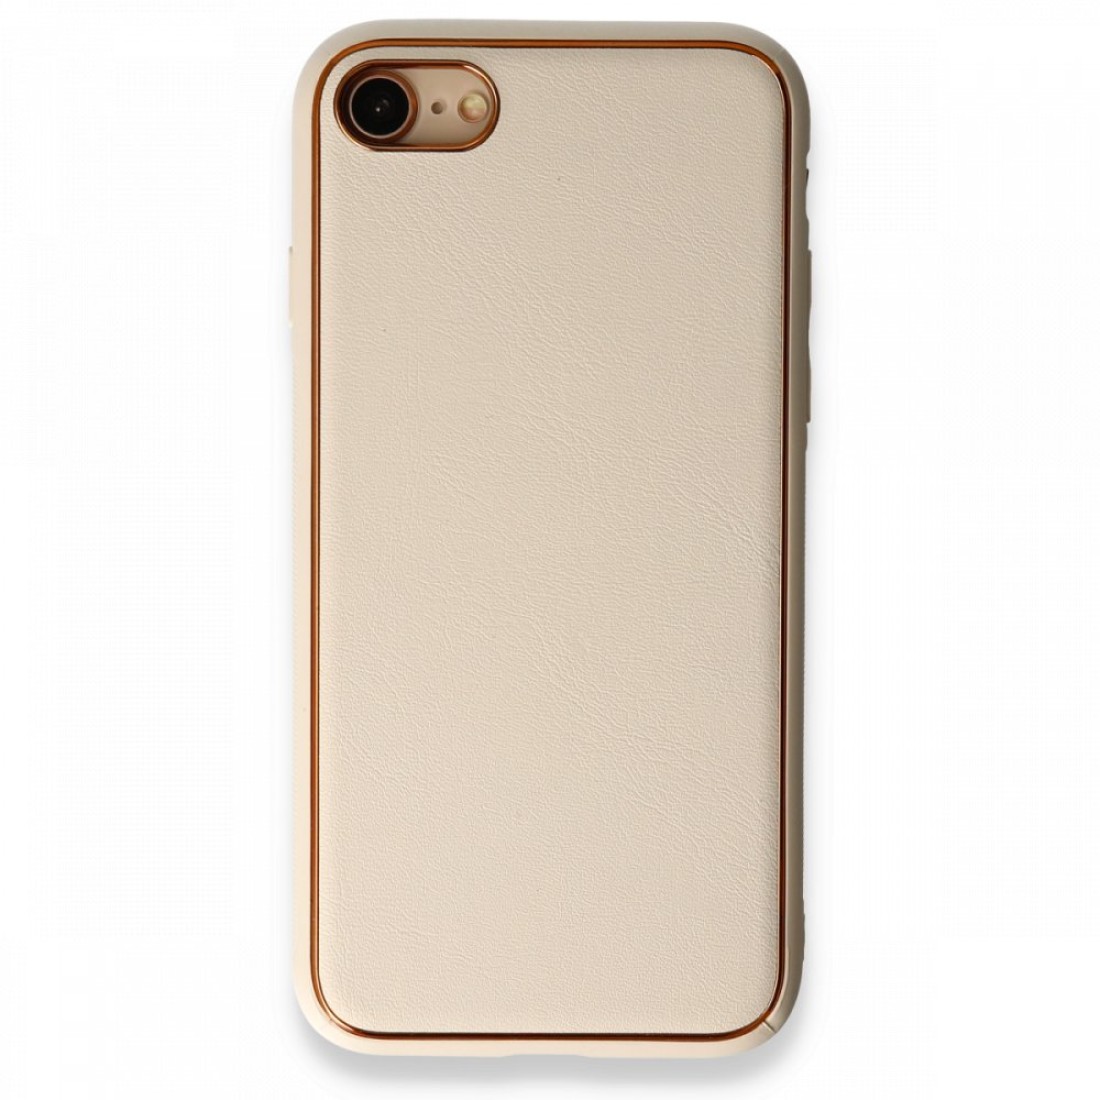 Apple iPhone 7 Kılıf Coco Deri Silikon Kapak - Gold